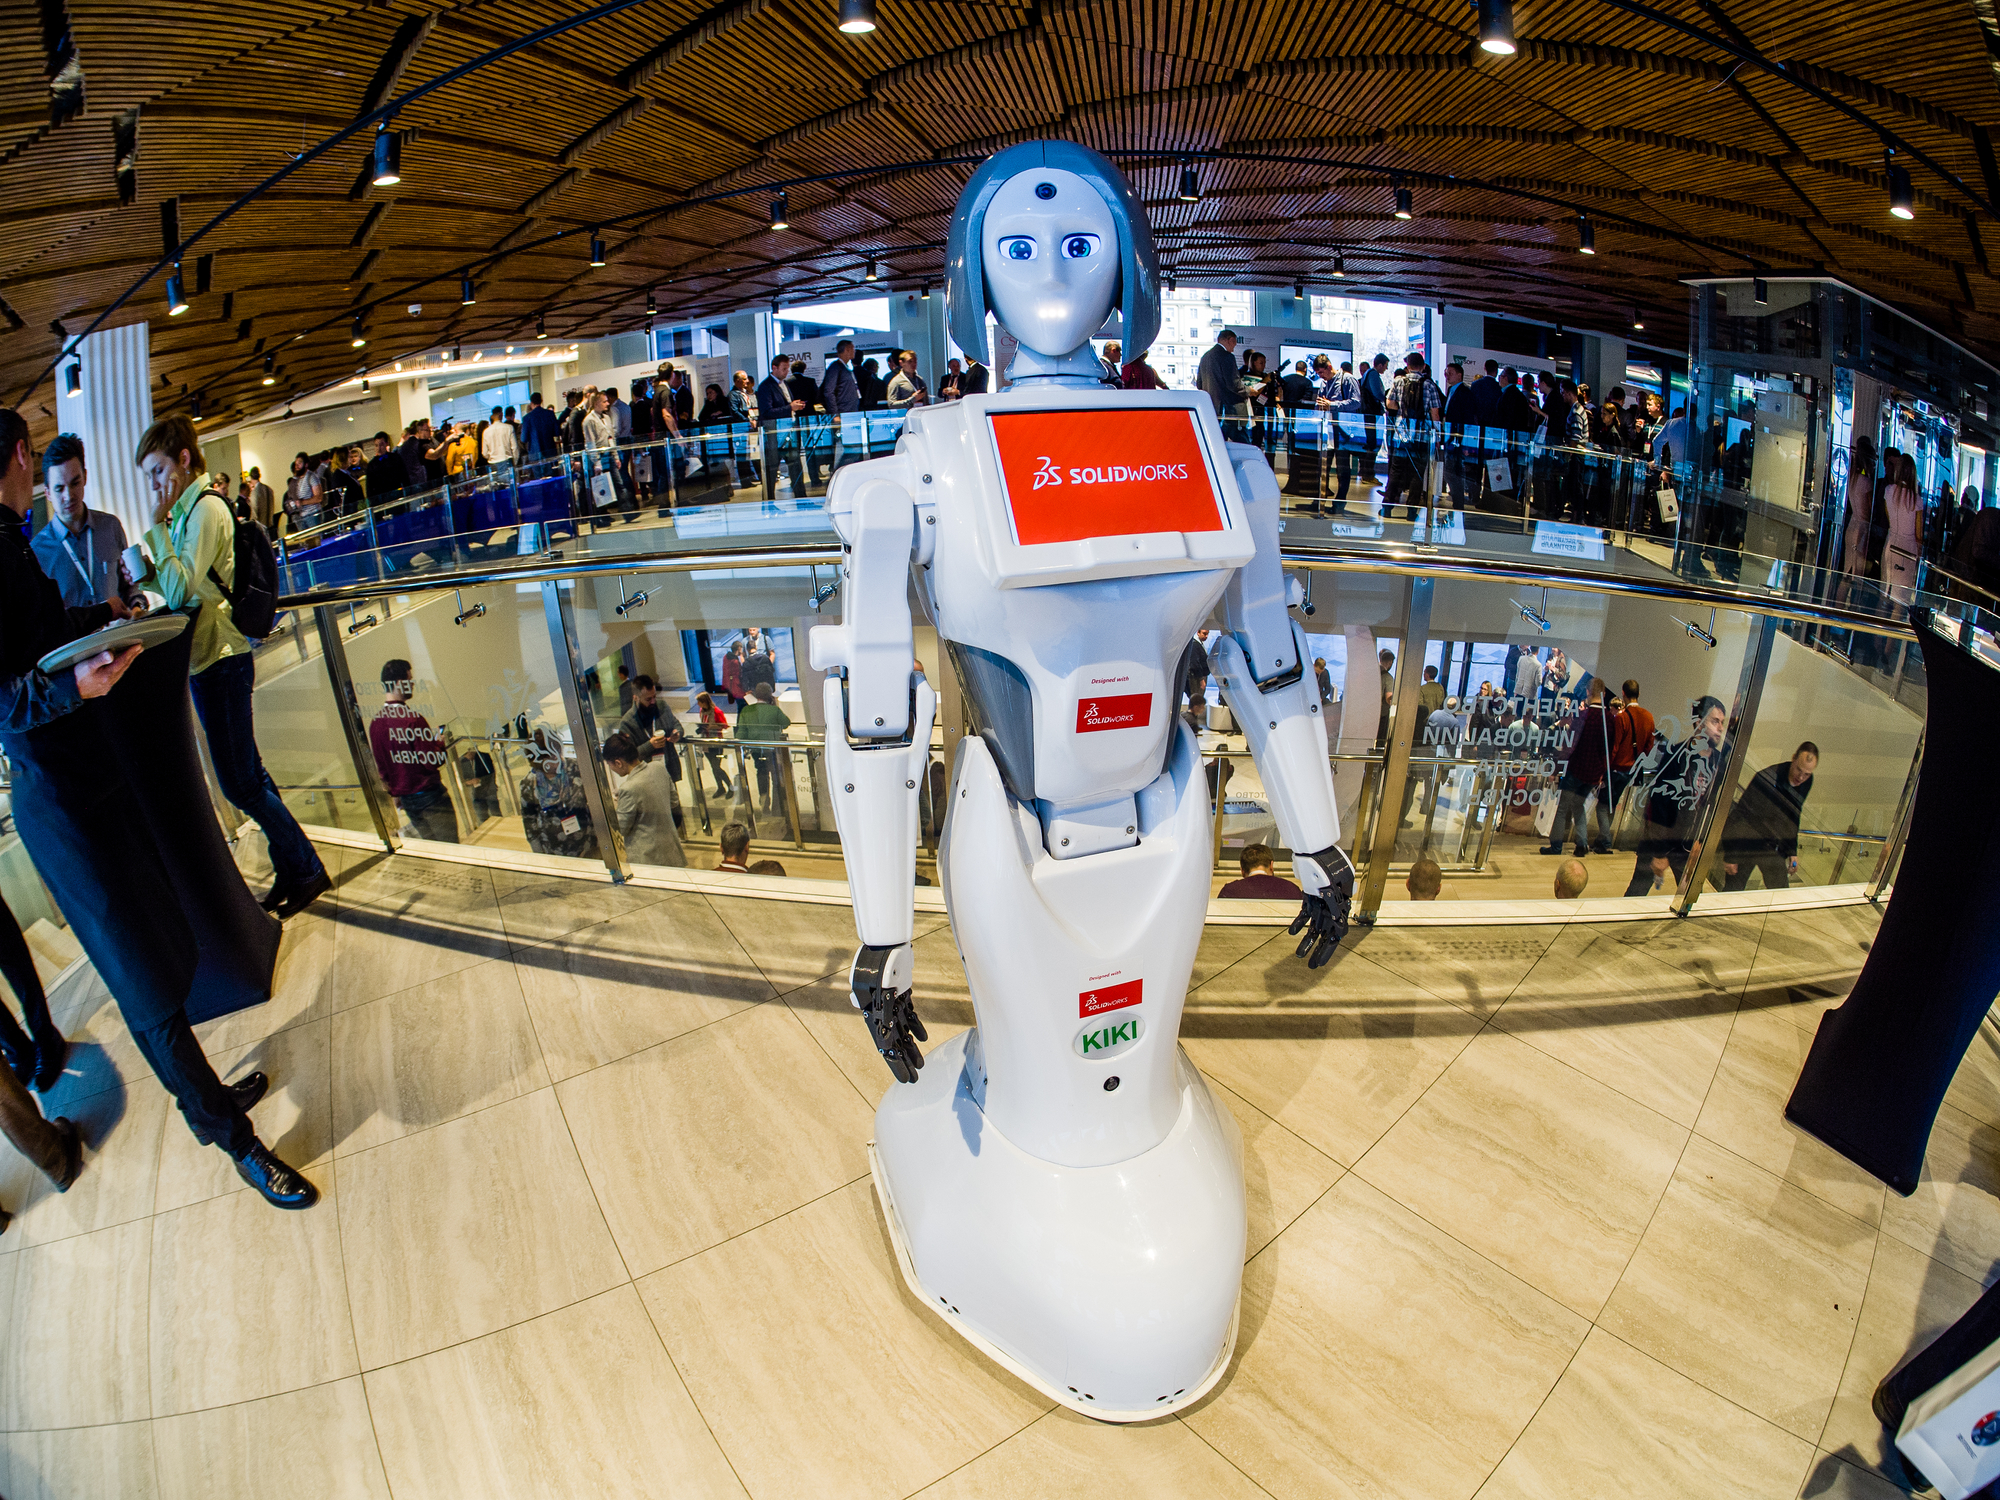 רובוט מארח בביתן סולידוורקס בכנס ברוסיה 2019. אילוסטרציה: depositphotos.com